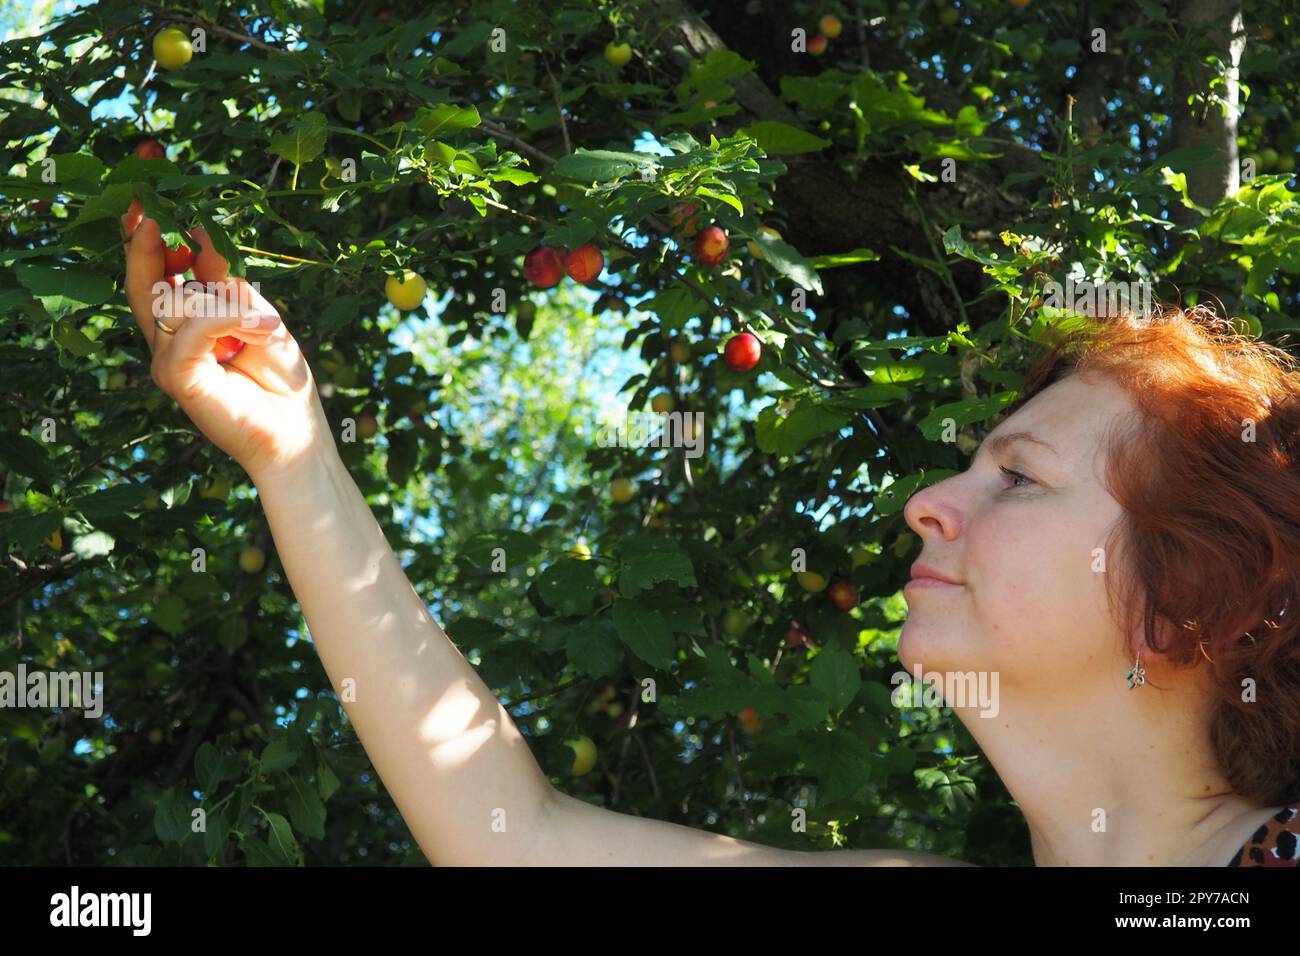 eine weiße, 40 Jahre alt, sammelt Kirschpflaume von einem Baum. Ernte in Serbien. Prunus cerasifera ist eine Pflaumenart, die unter den gebräuchlichen Namen Cherry Pflum und Myrobalan Pflum bekannt ist Stockfoto